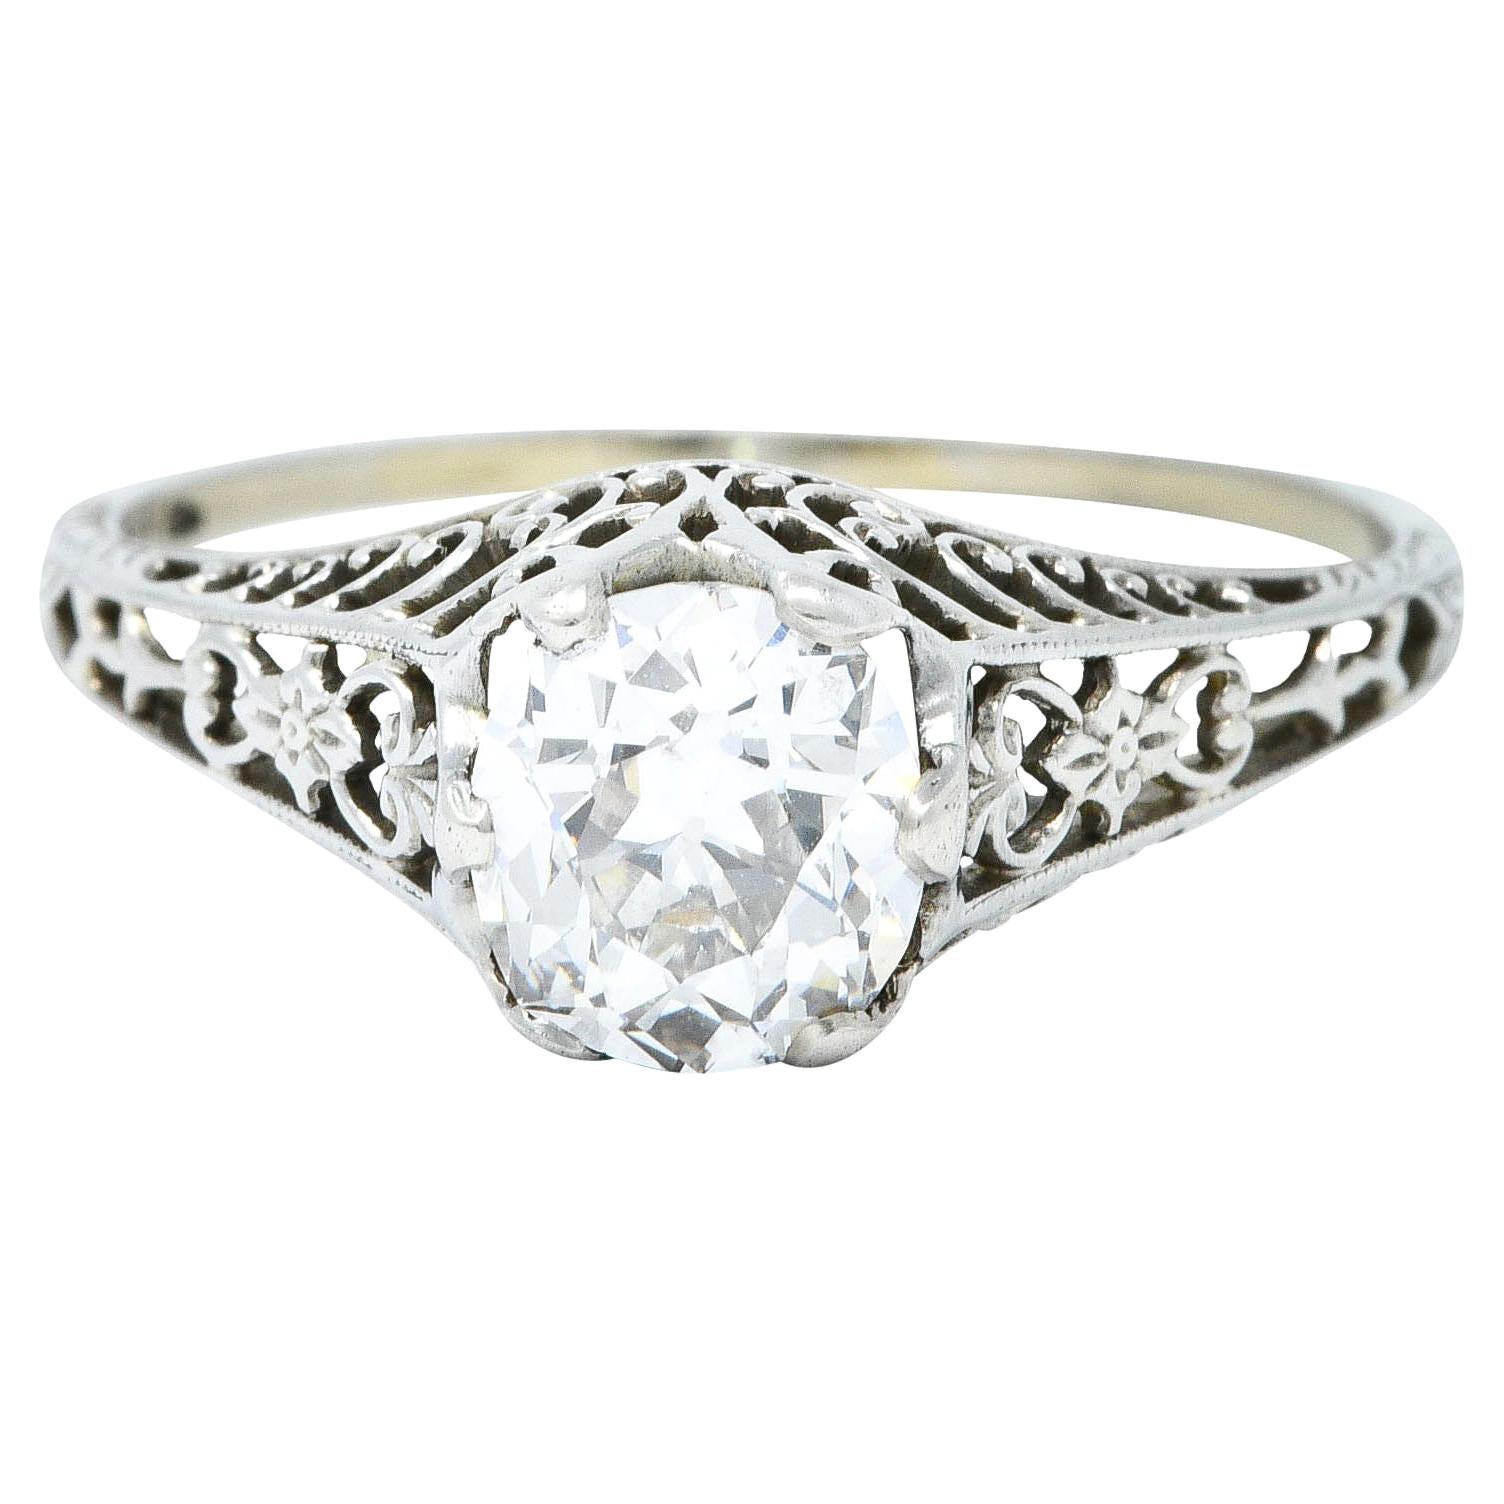 Carter & Gough 1.10 Carat Diamond 18 Karat White Gold Engagement Ring